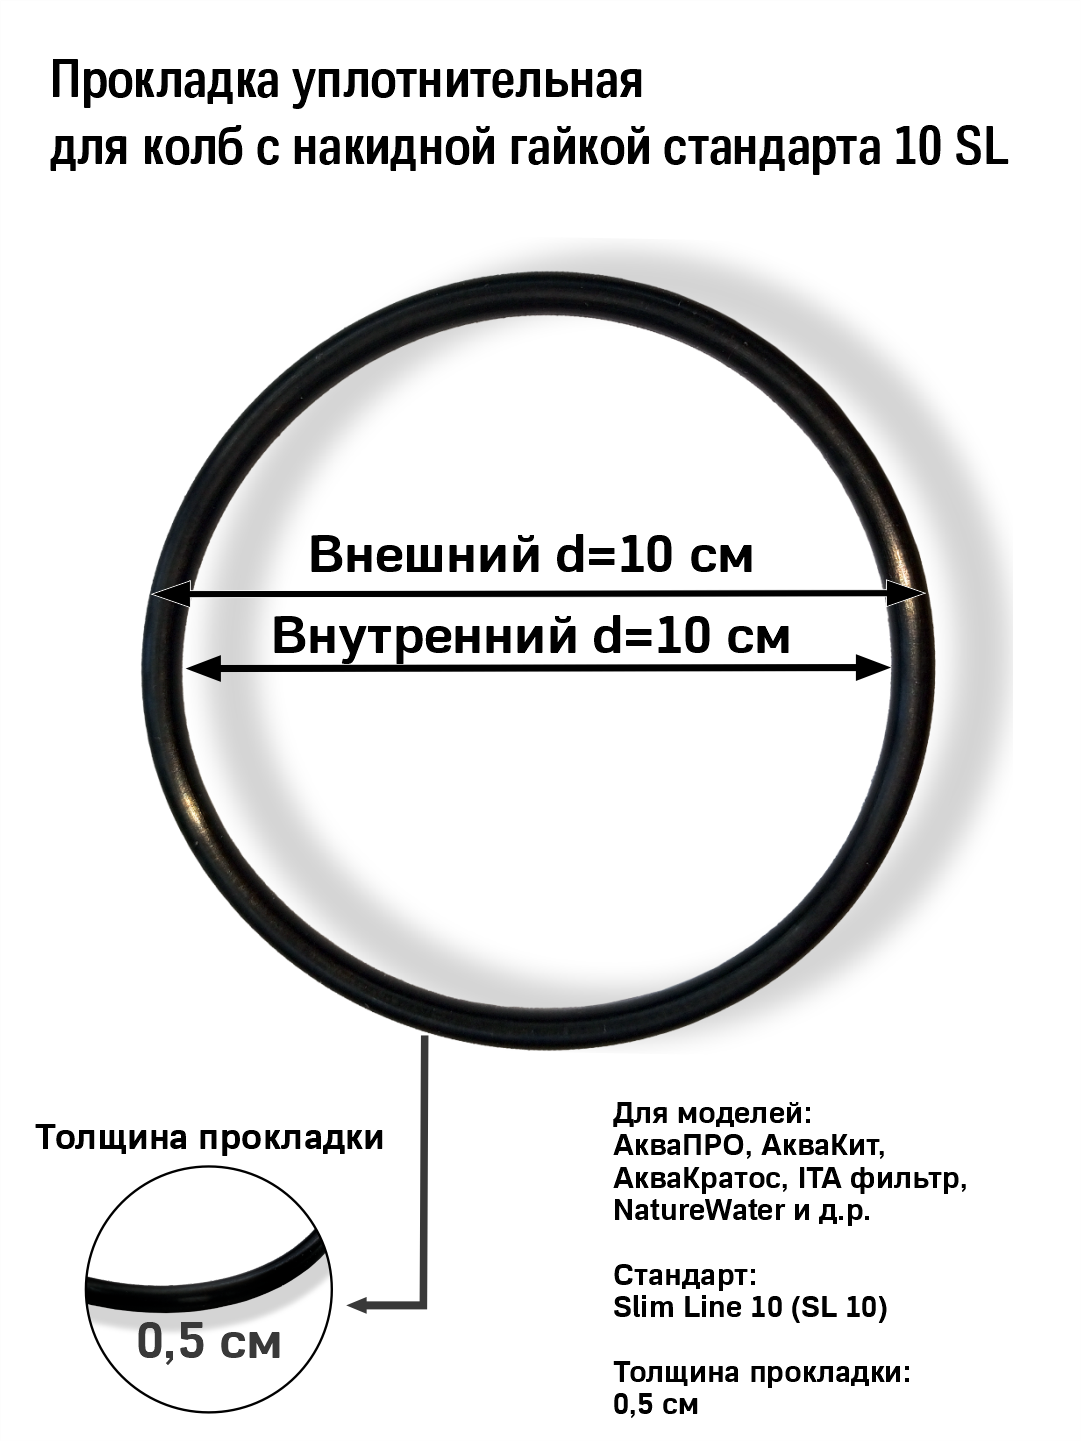 Уплотнительное кольцо (прокладка) для корпуса фильтра стандарта 10 SL с накидной гайкой АкваПРО, Aqua kit, ITA filter и др. - фотография № 1